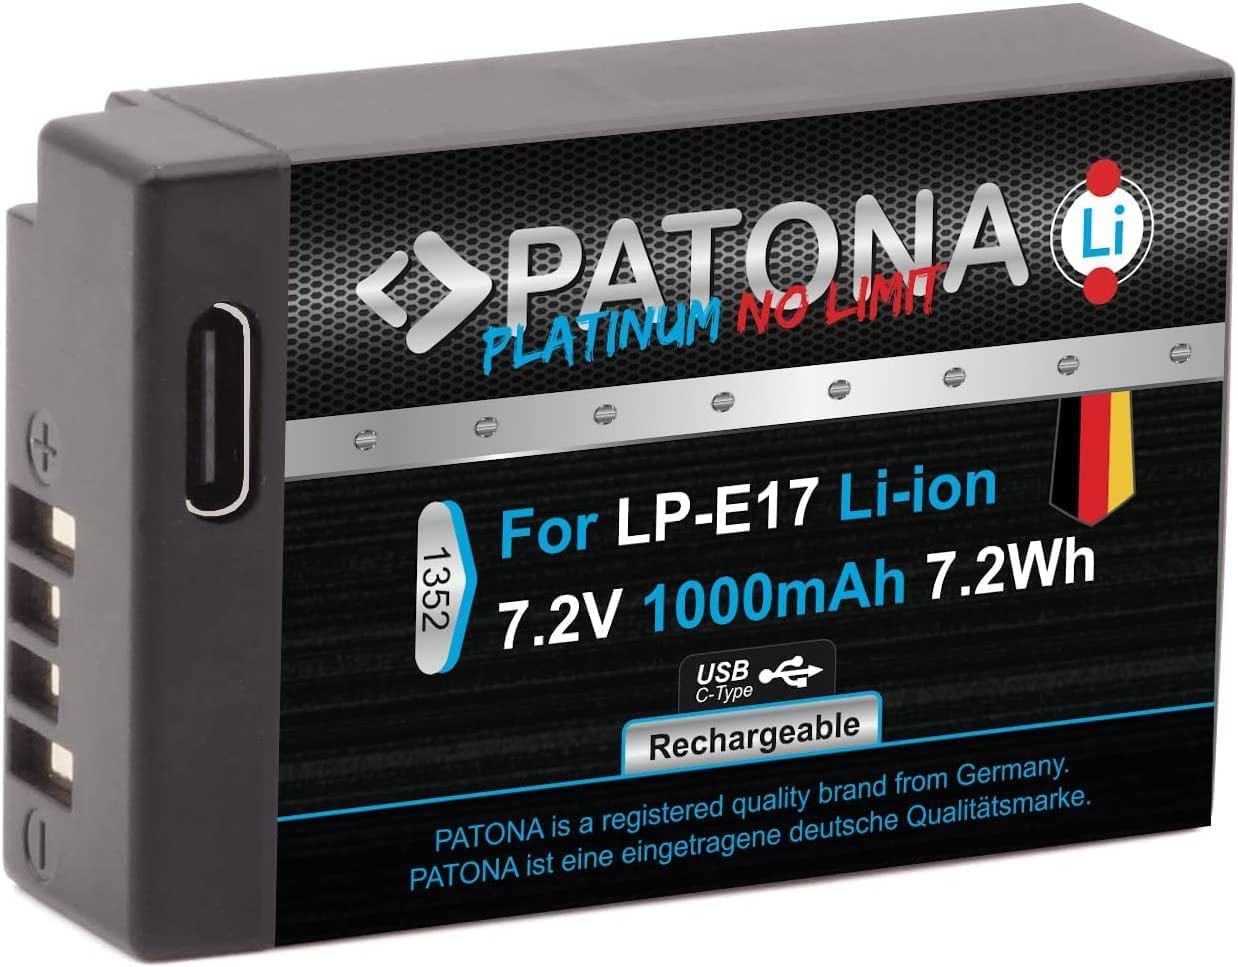 Patona Platinum Battery USB-C Canon LP-E17